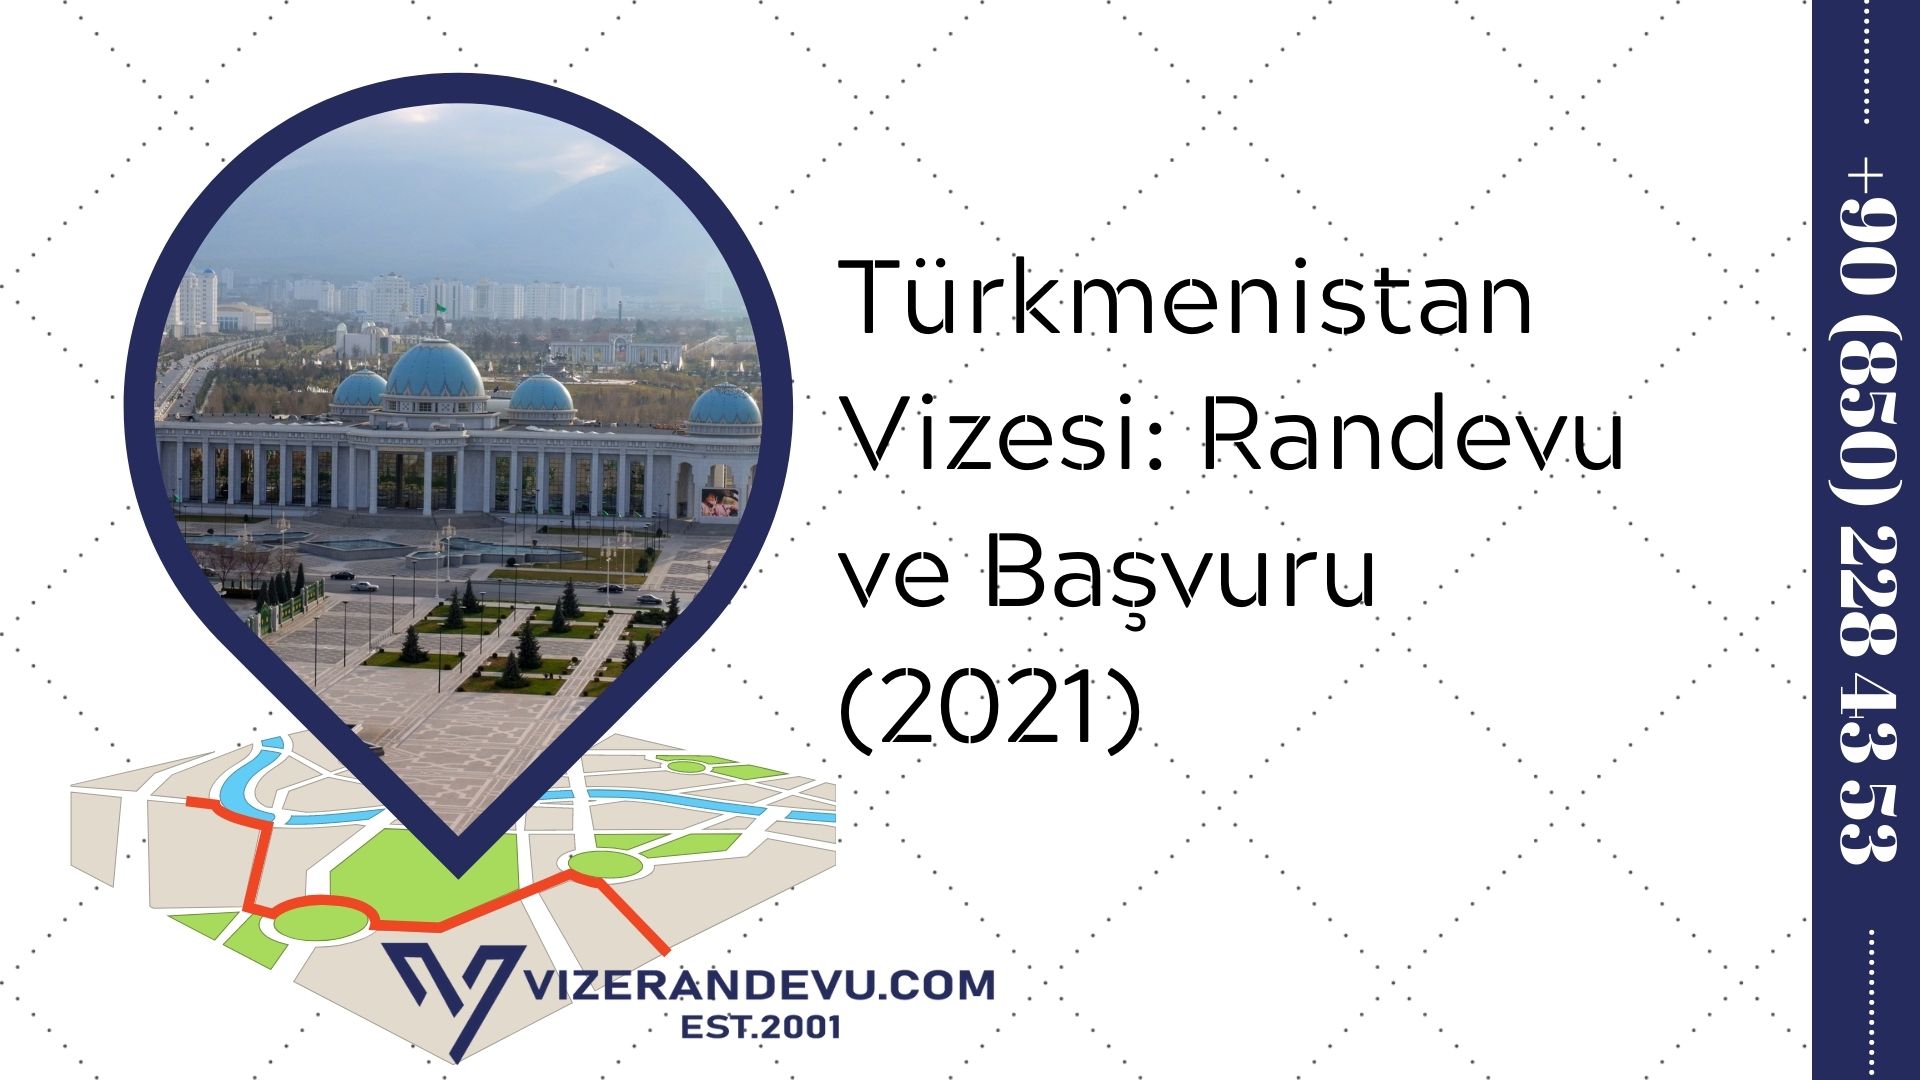 Türkmenistan Vizesi: Randevu ve Başvuru (2021)